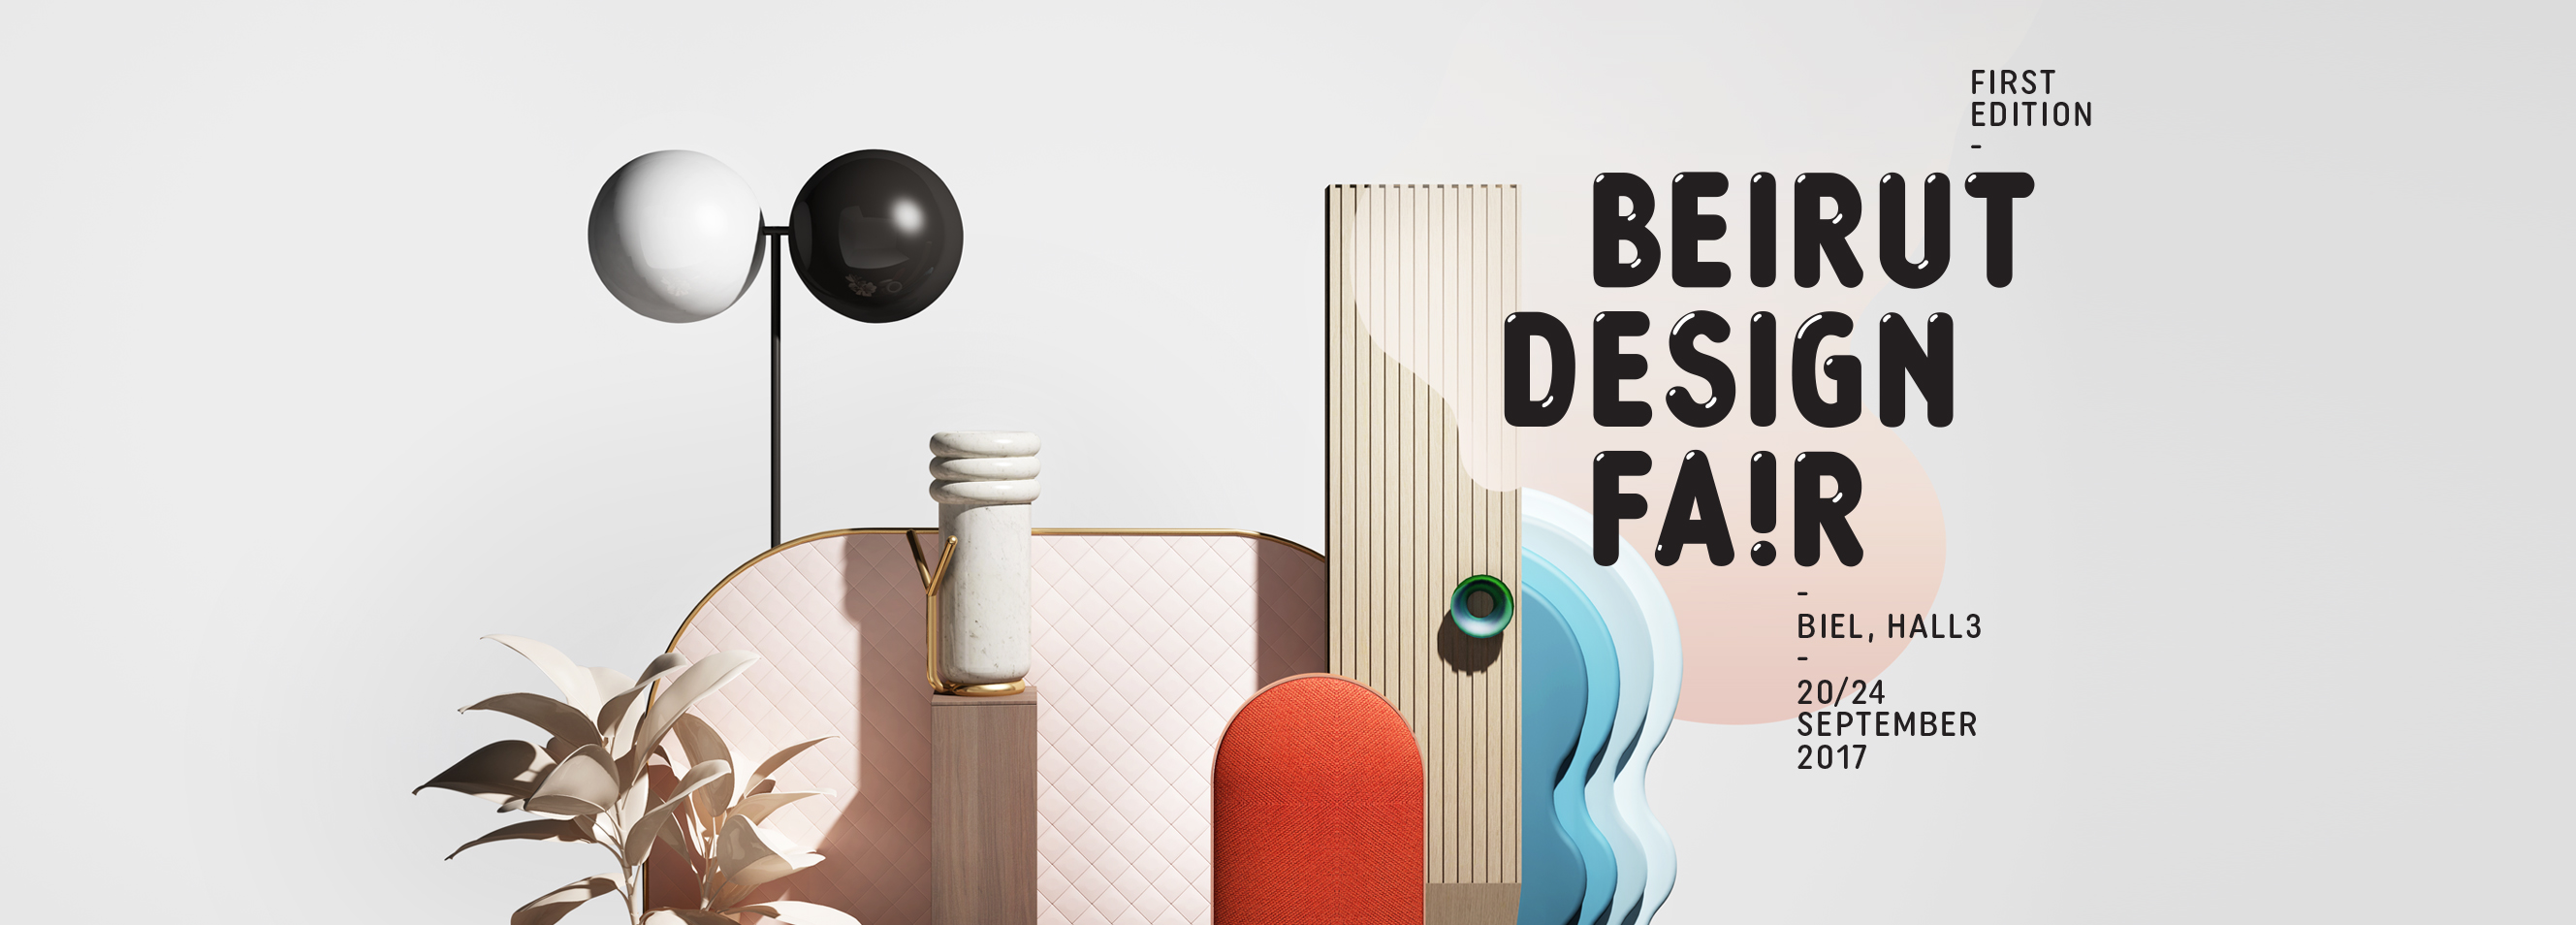 Beirut Design Fait - 1st Edition